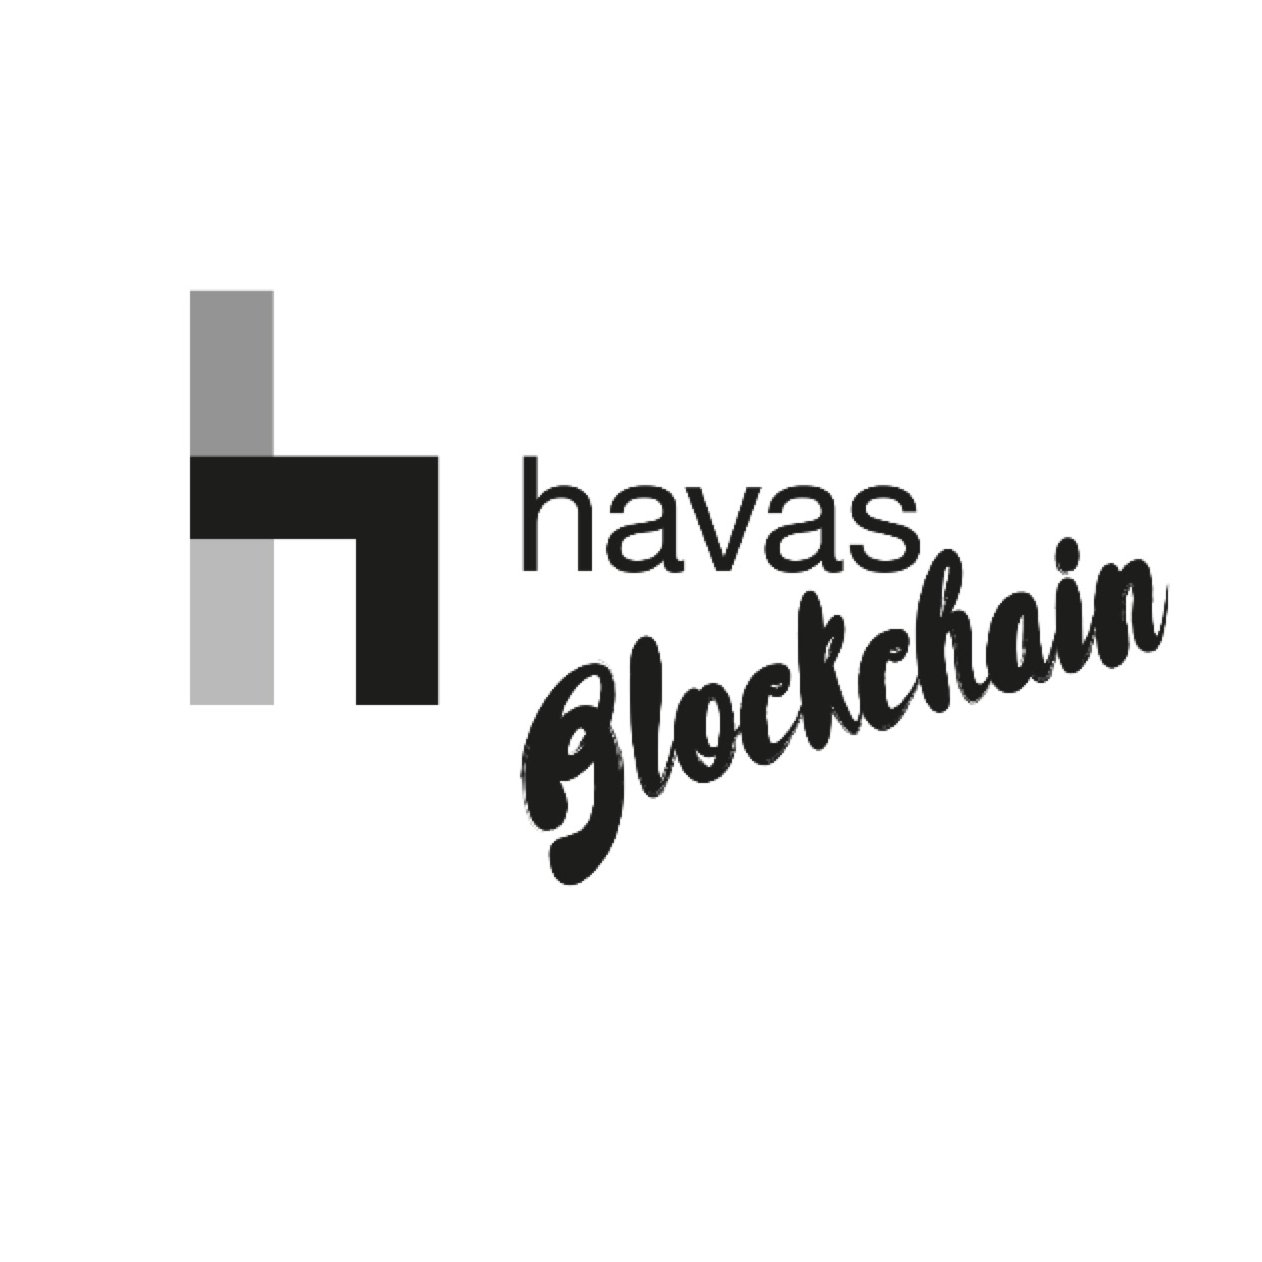 Blockchain, crypto, fintech & Startups studio of @HavasGroup